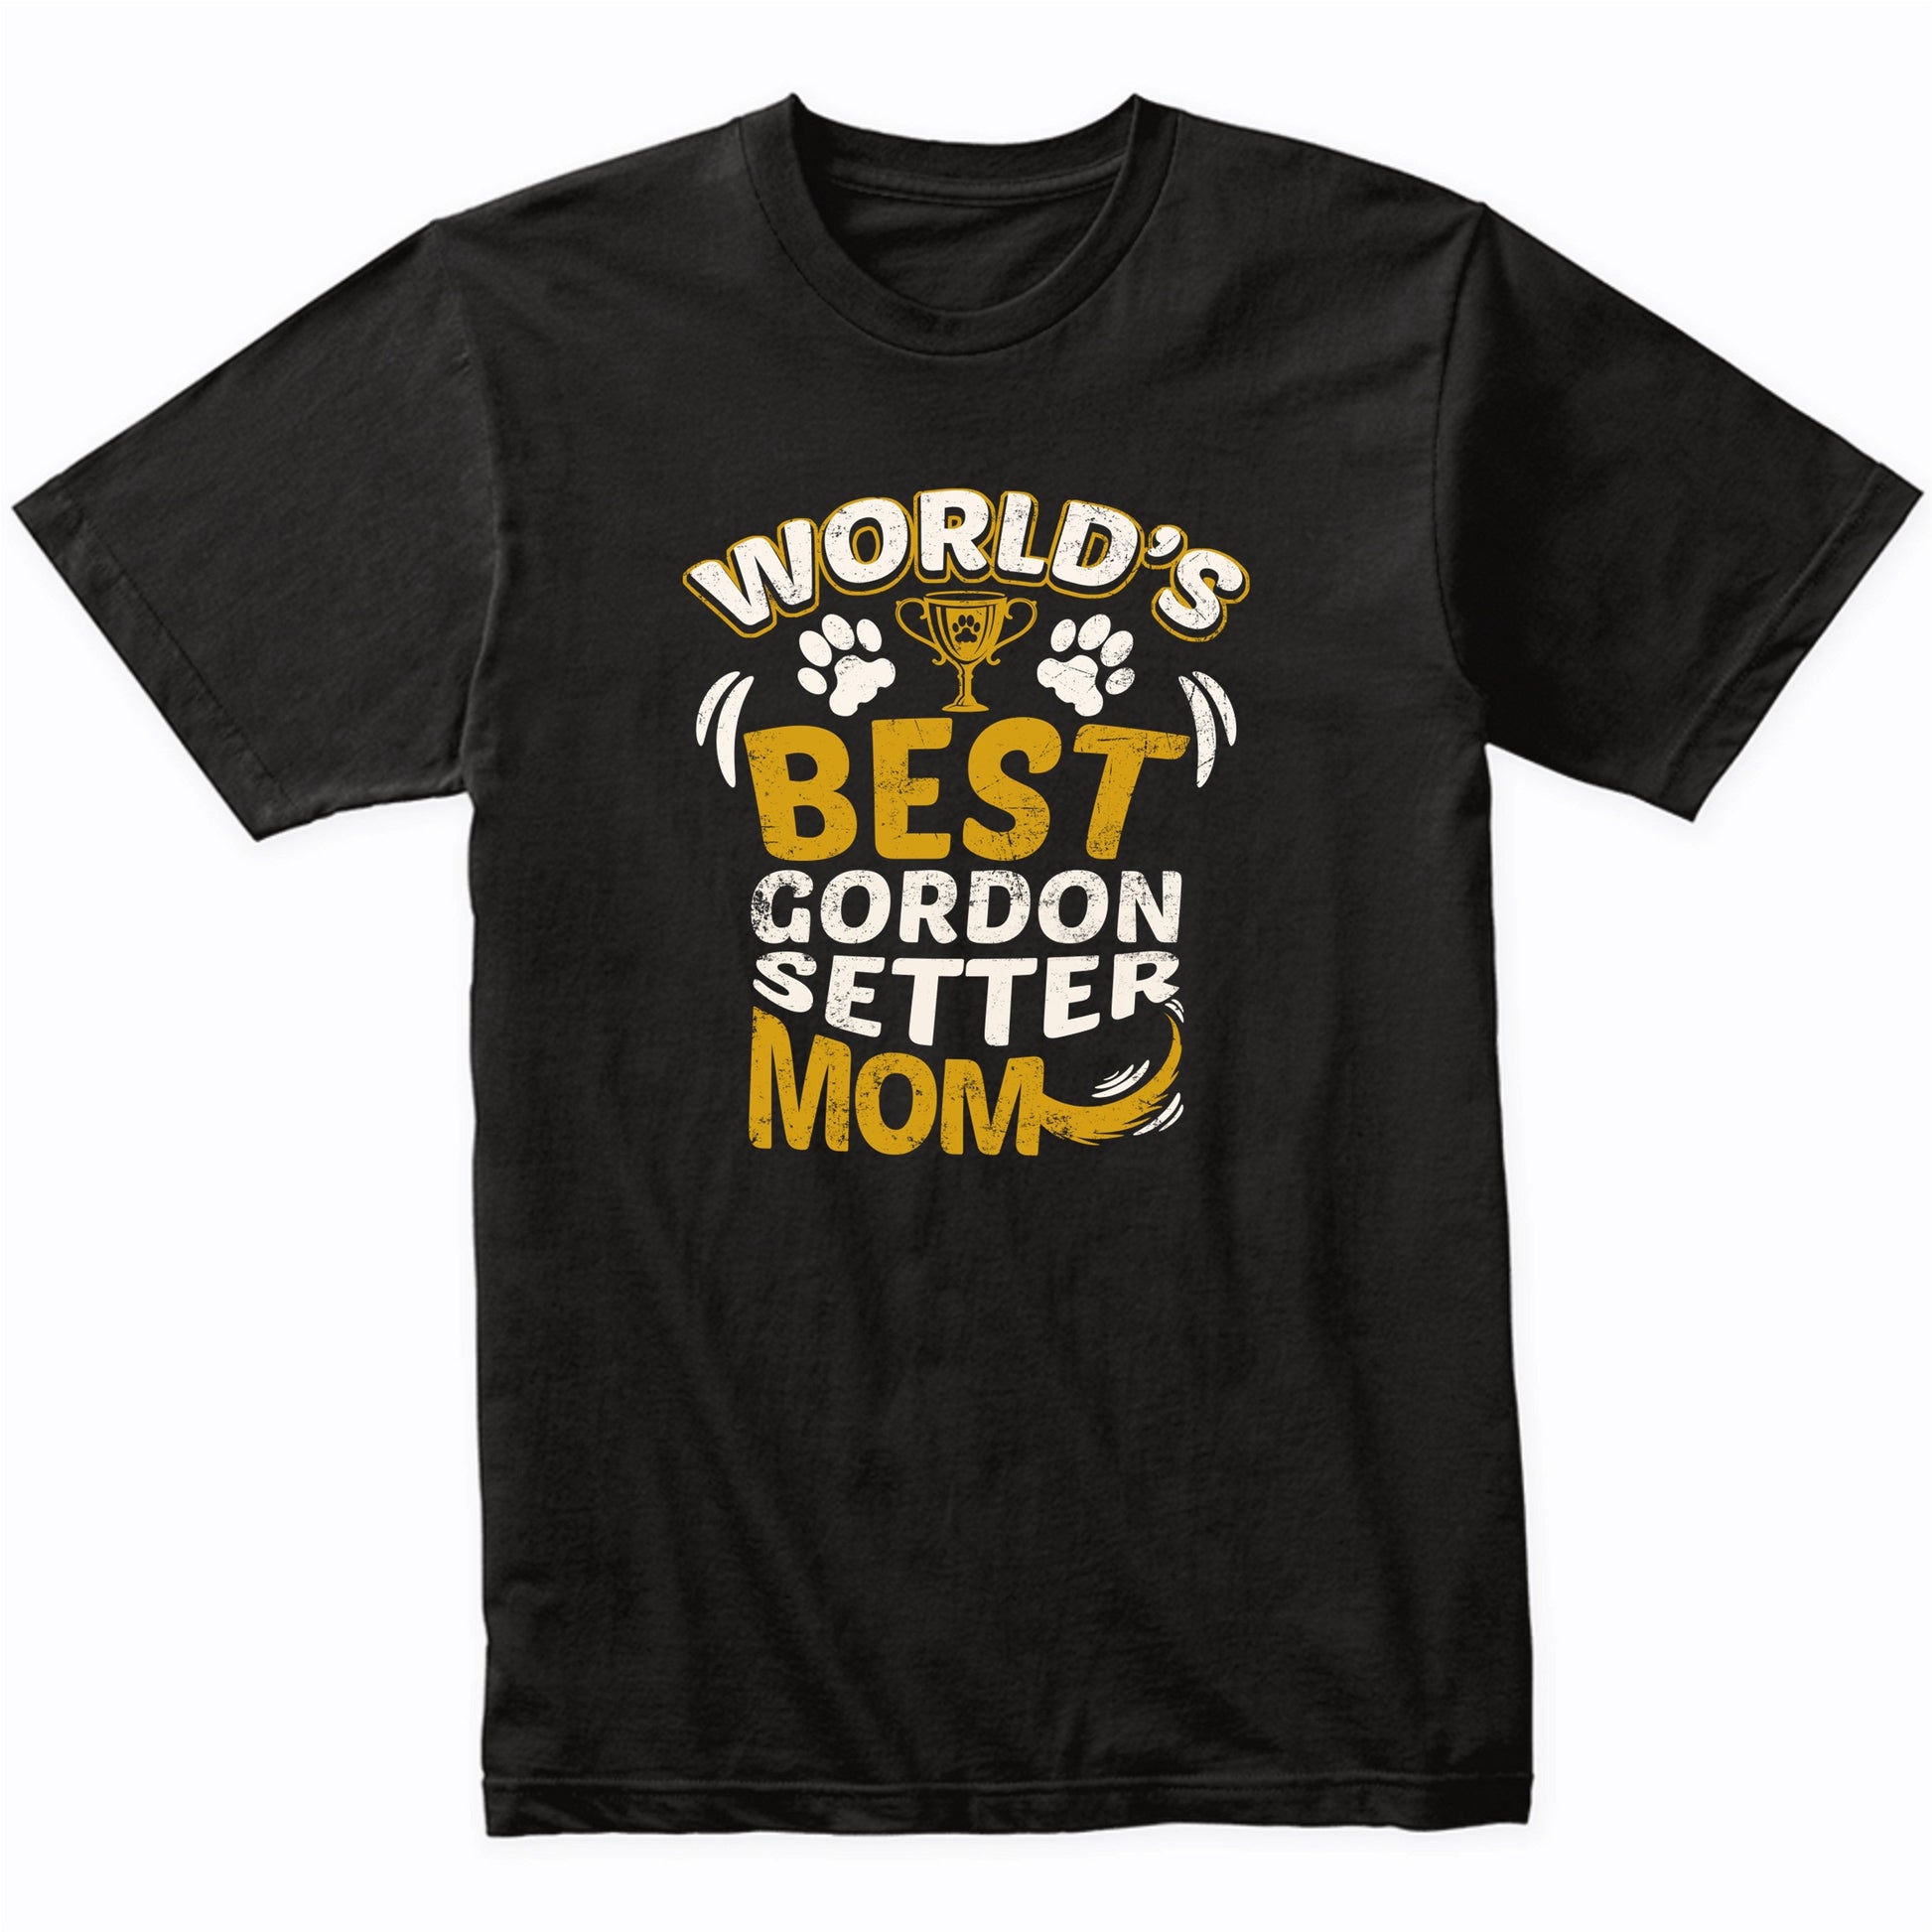 World's Best Gordon Setter Mom Graphic T-Shirt